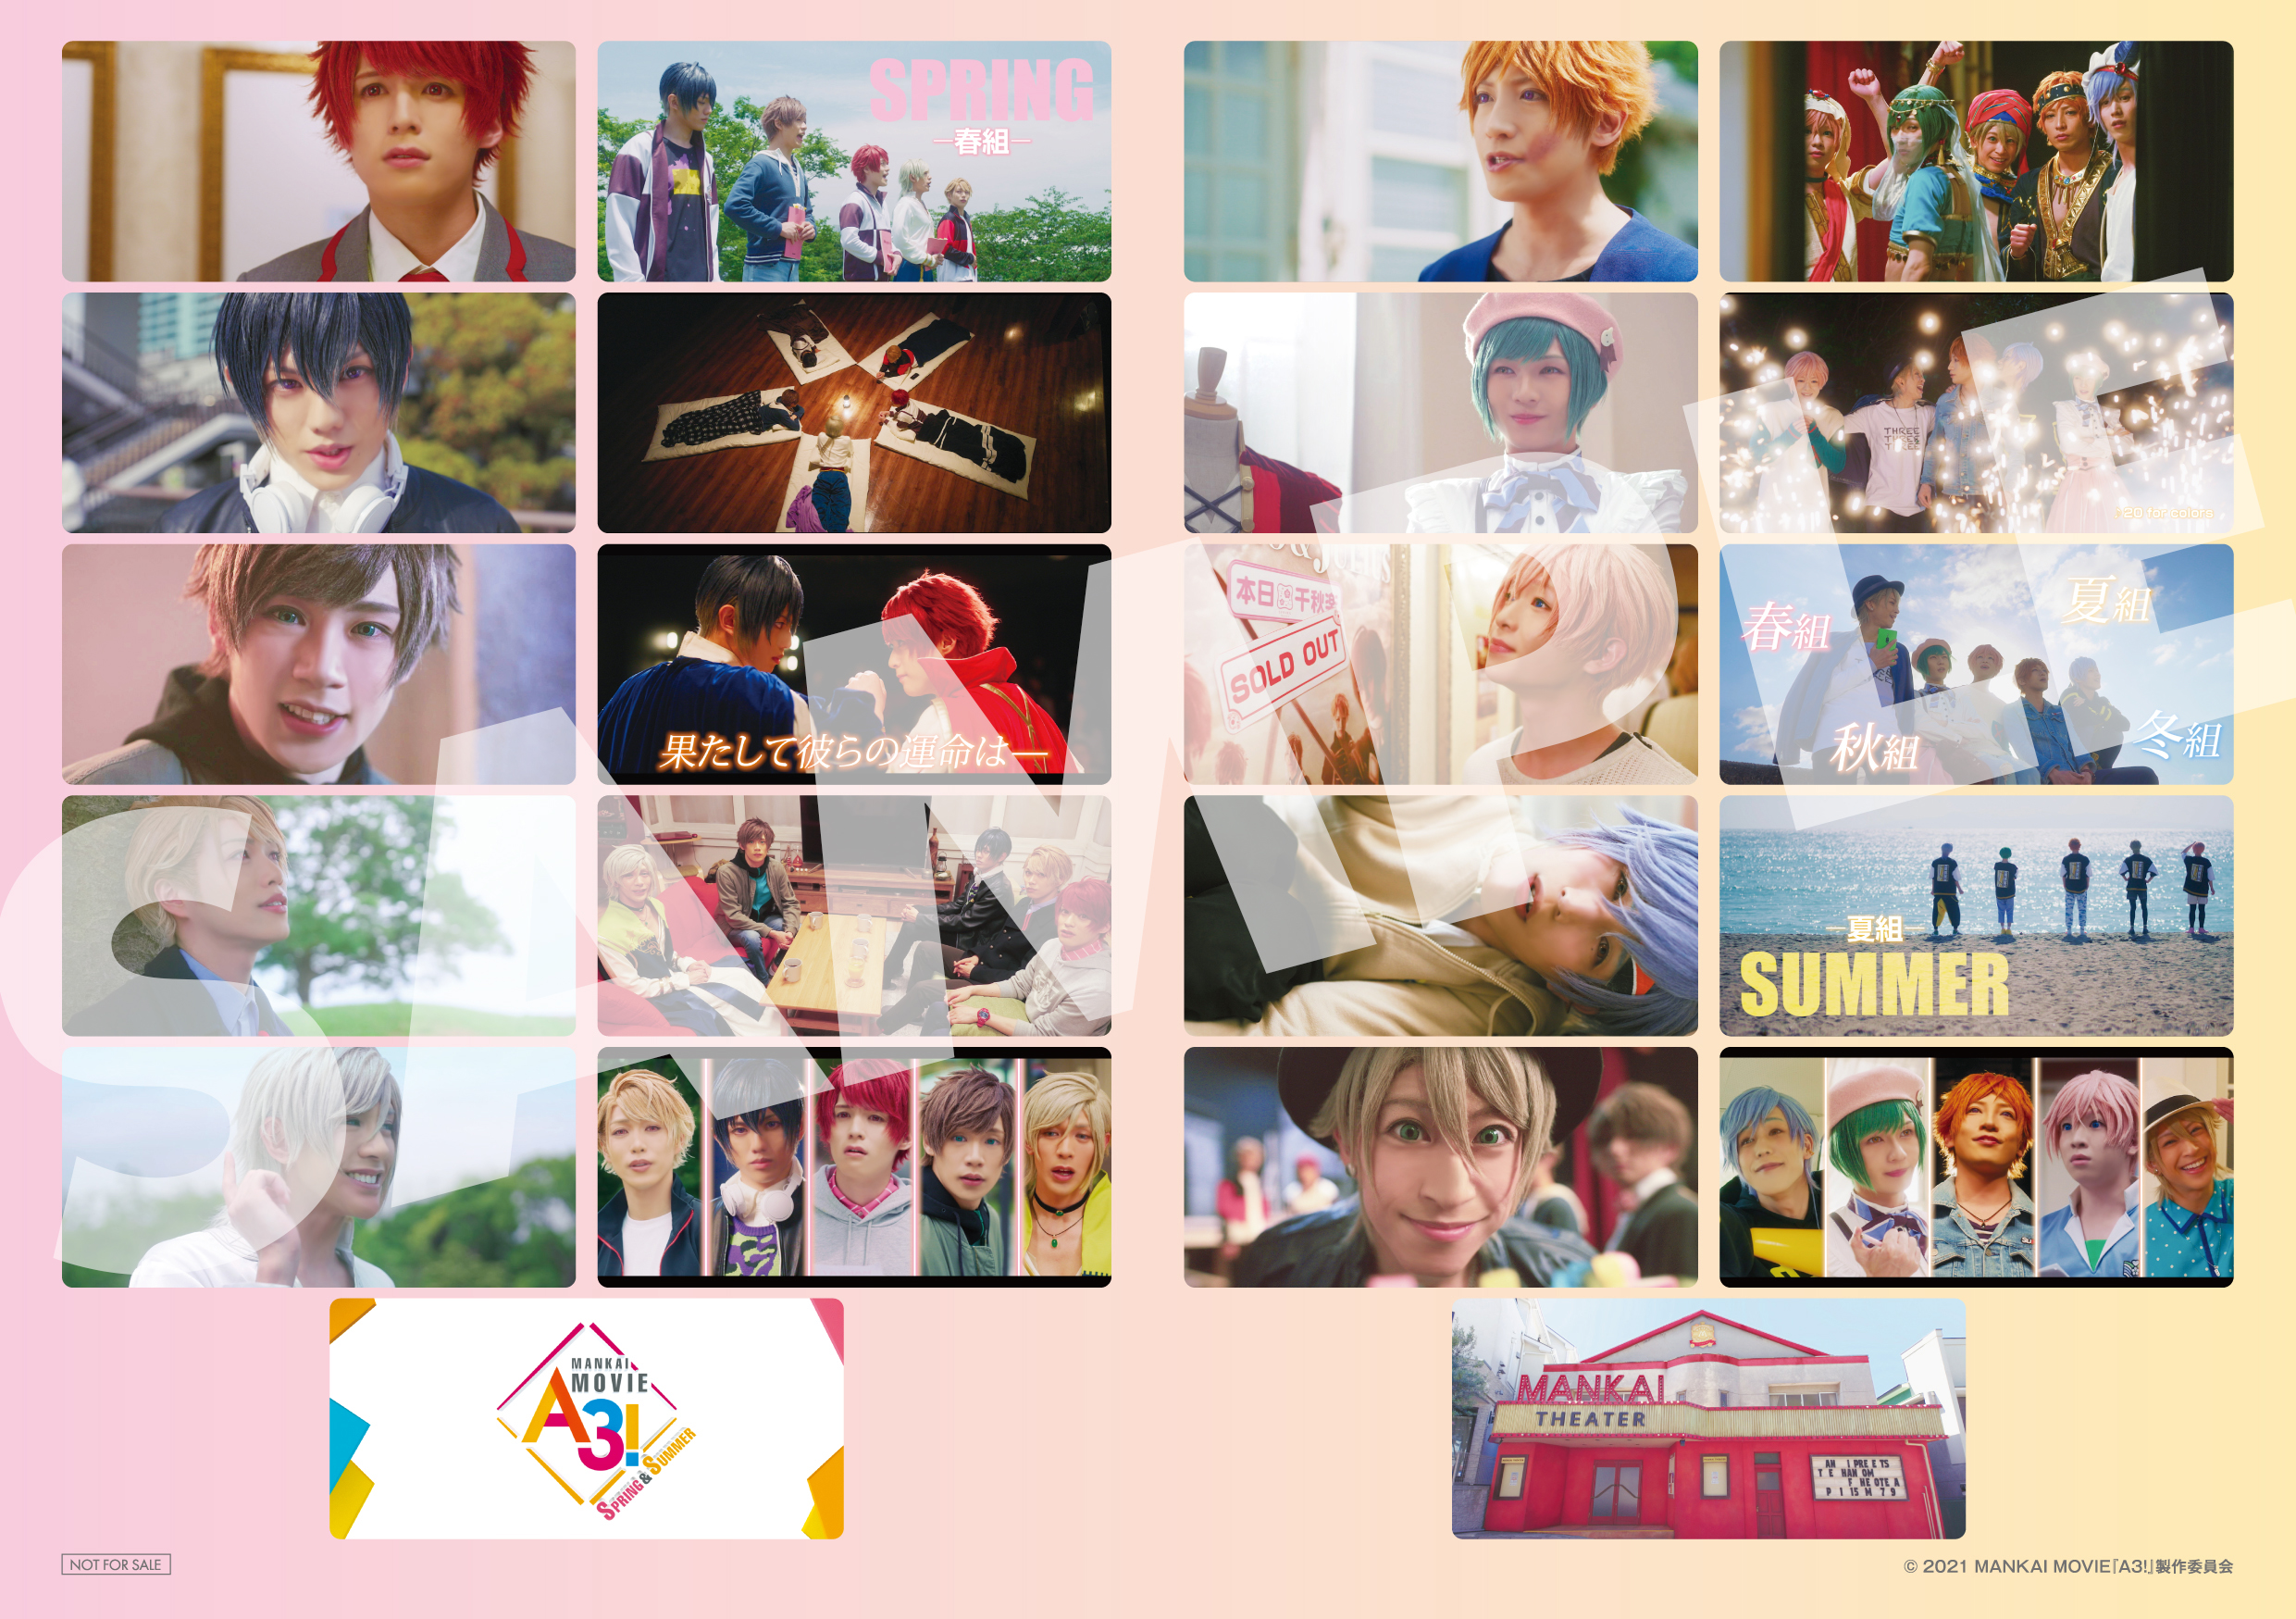 映画 「MANKAI MOVIE「A3!」～SPRING & SUMMER～」コマヌキステッカー